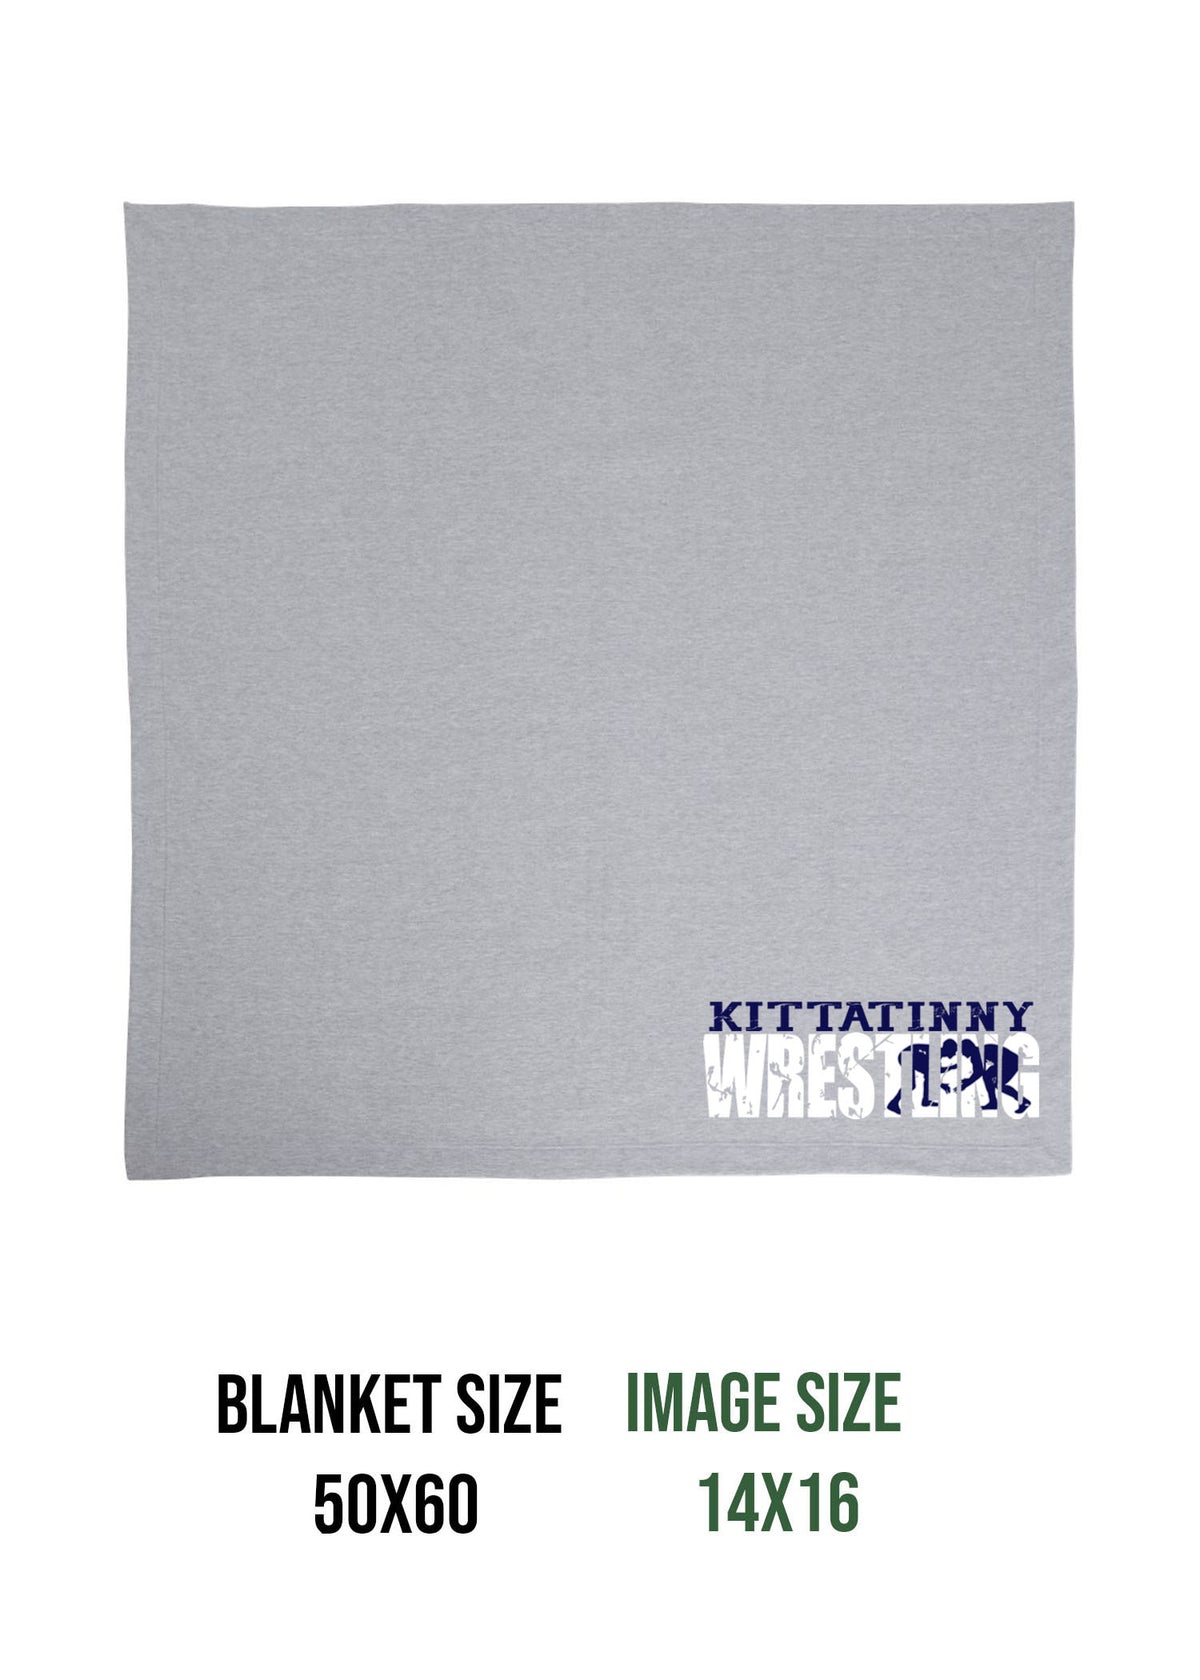 Kitattinny Wrestling Design 2 Blanket